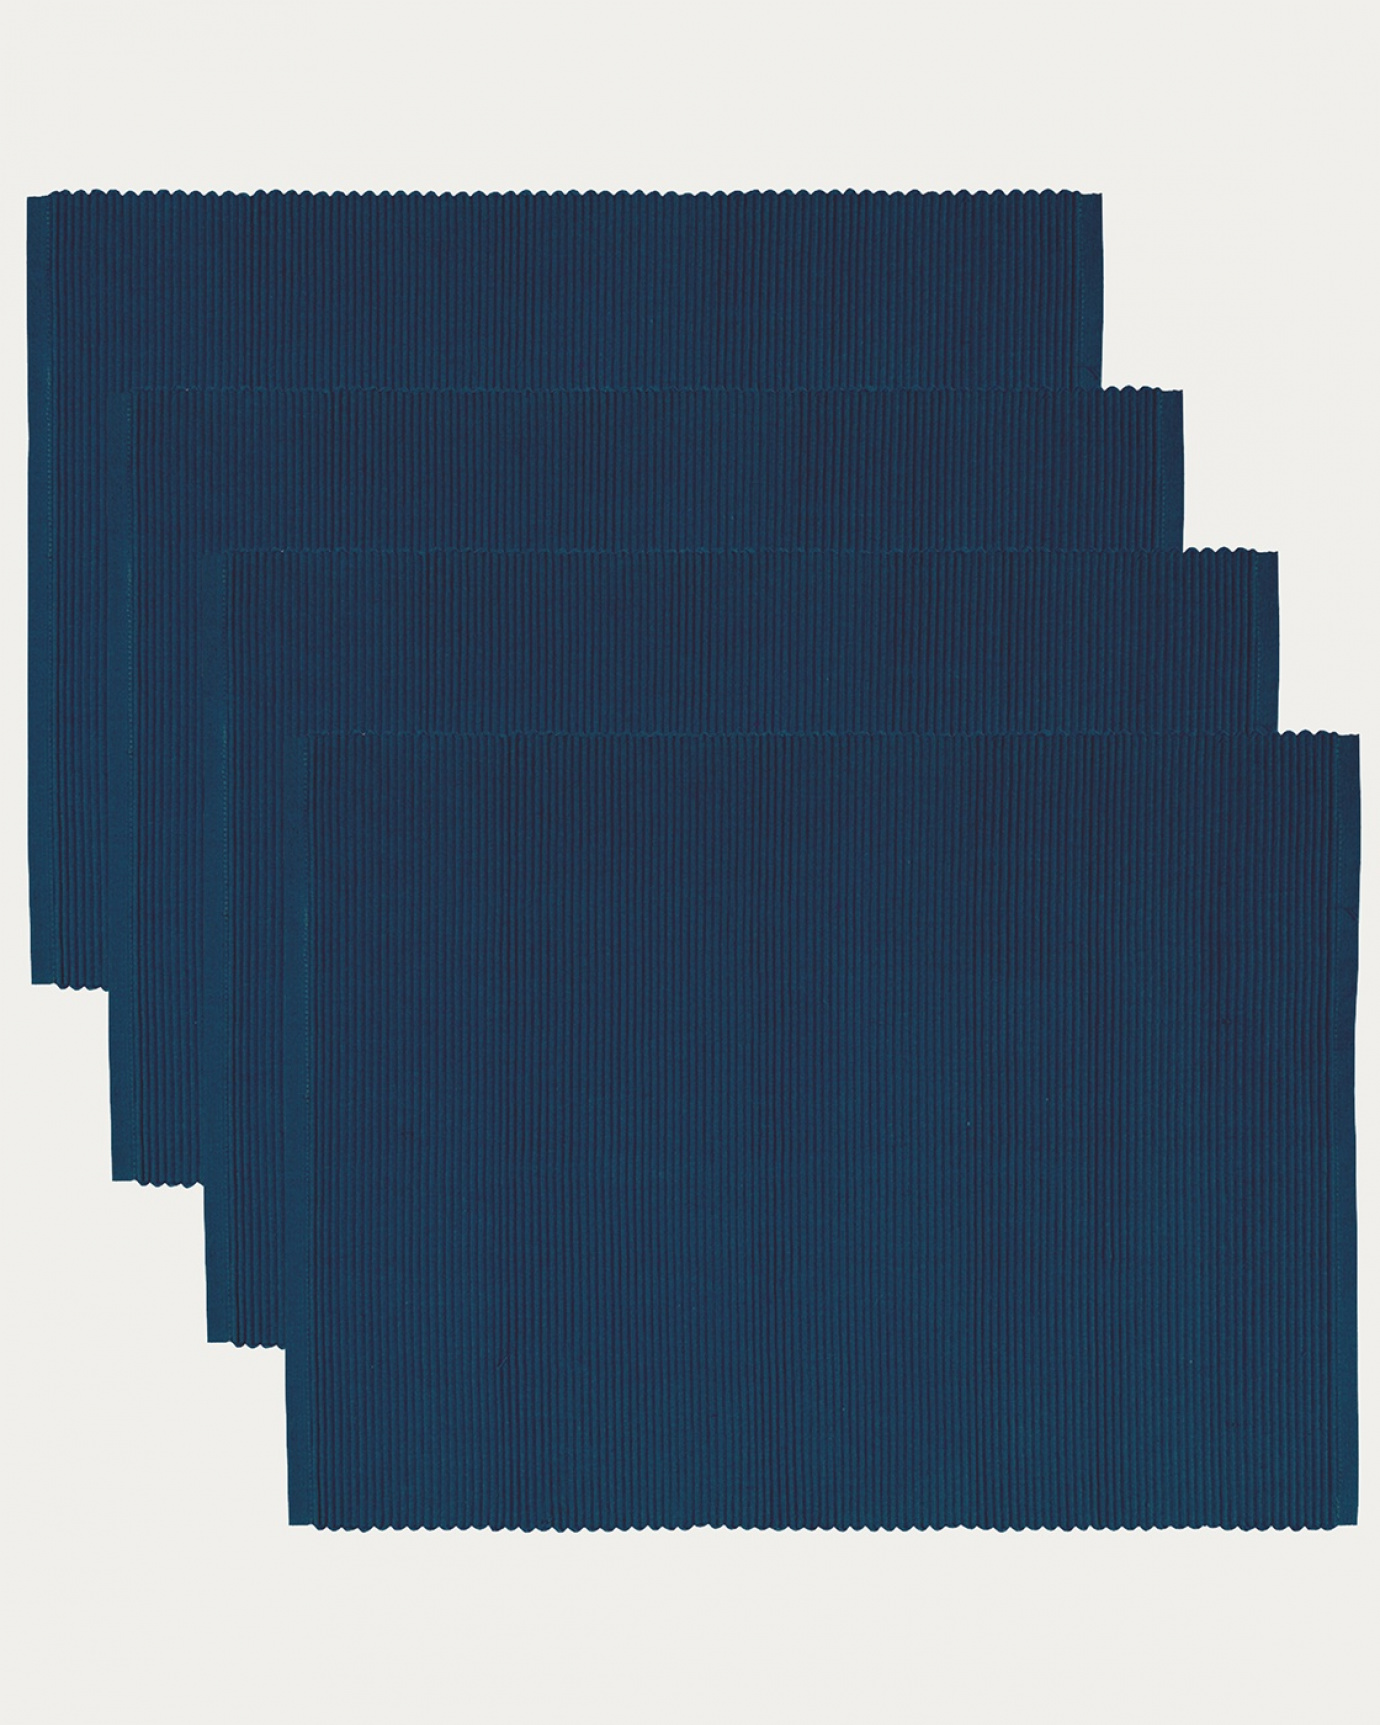 Produktbild indigoblau UNI Tischset aus weicher Baumwolle in Rippenqualität von LINUM DESIGN. Größe 35x46 cm und in 4er-Pack verkauft.